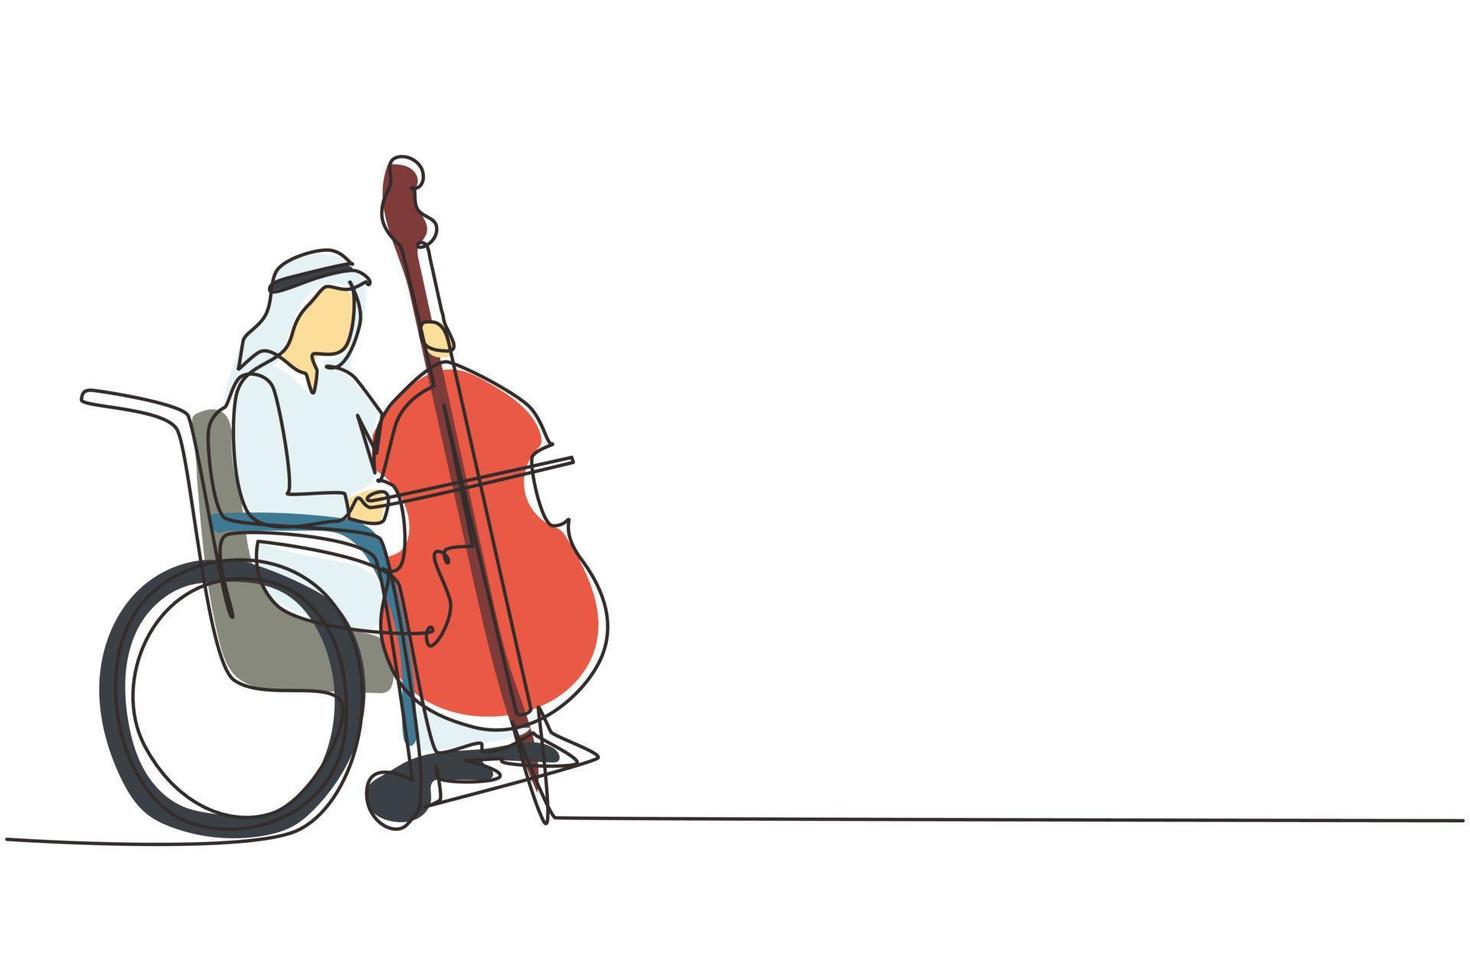 enda en rad ritning ung arabisk man sitter i rullstol spelar cello i konsert. funktionshinder och klassisk musik. fysiskt handikappad. person på sjukhus. kontinuerlig linje rita design grafisk vektor